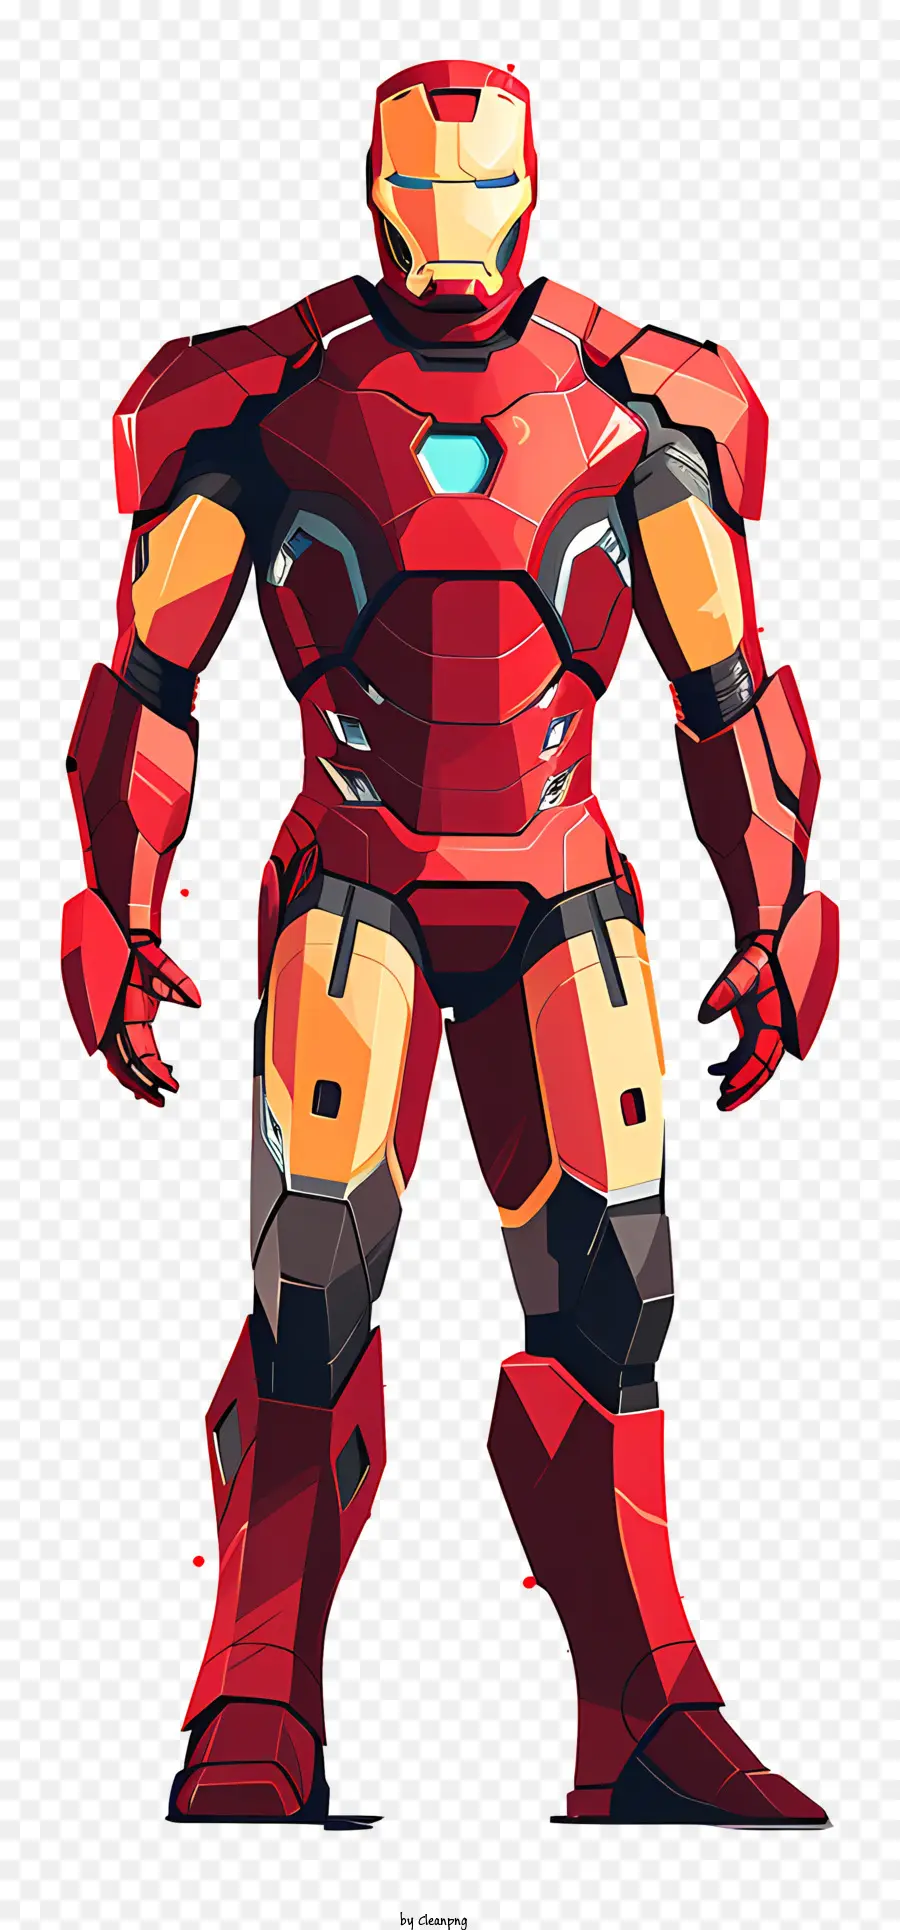 uomo di ferro - Immagine di Iron Man in Red Suit